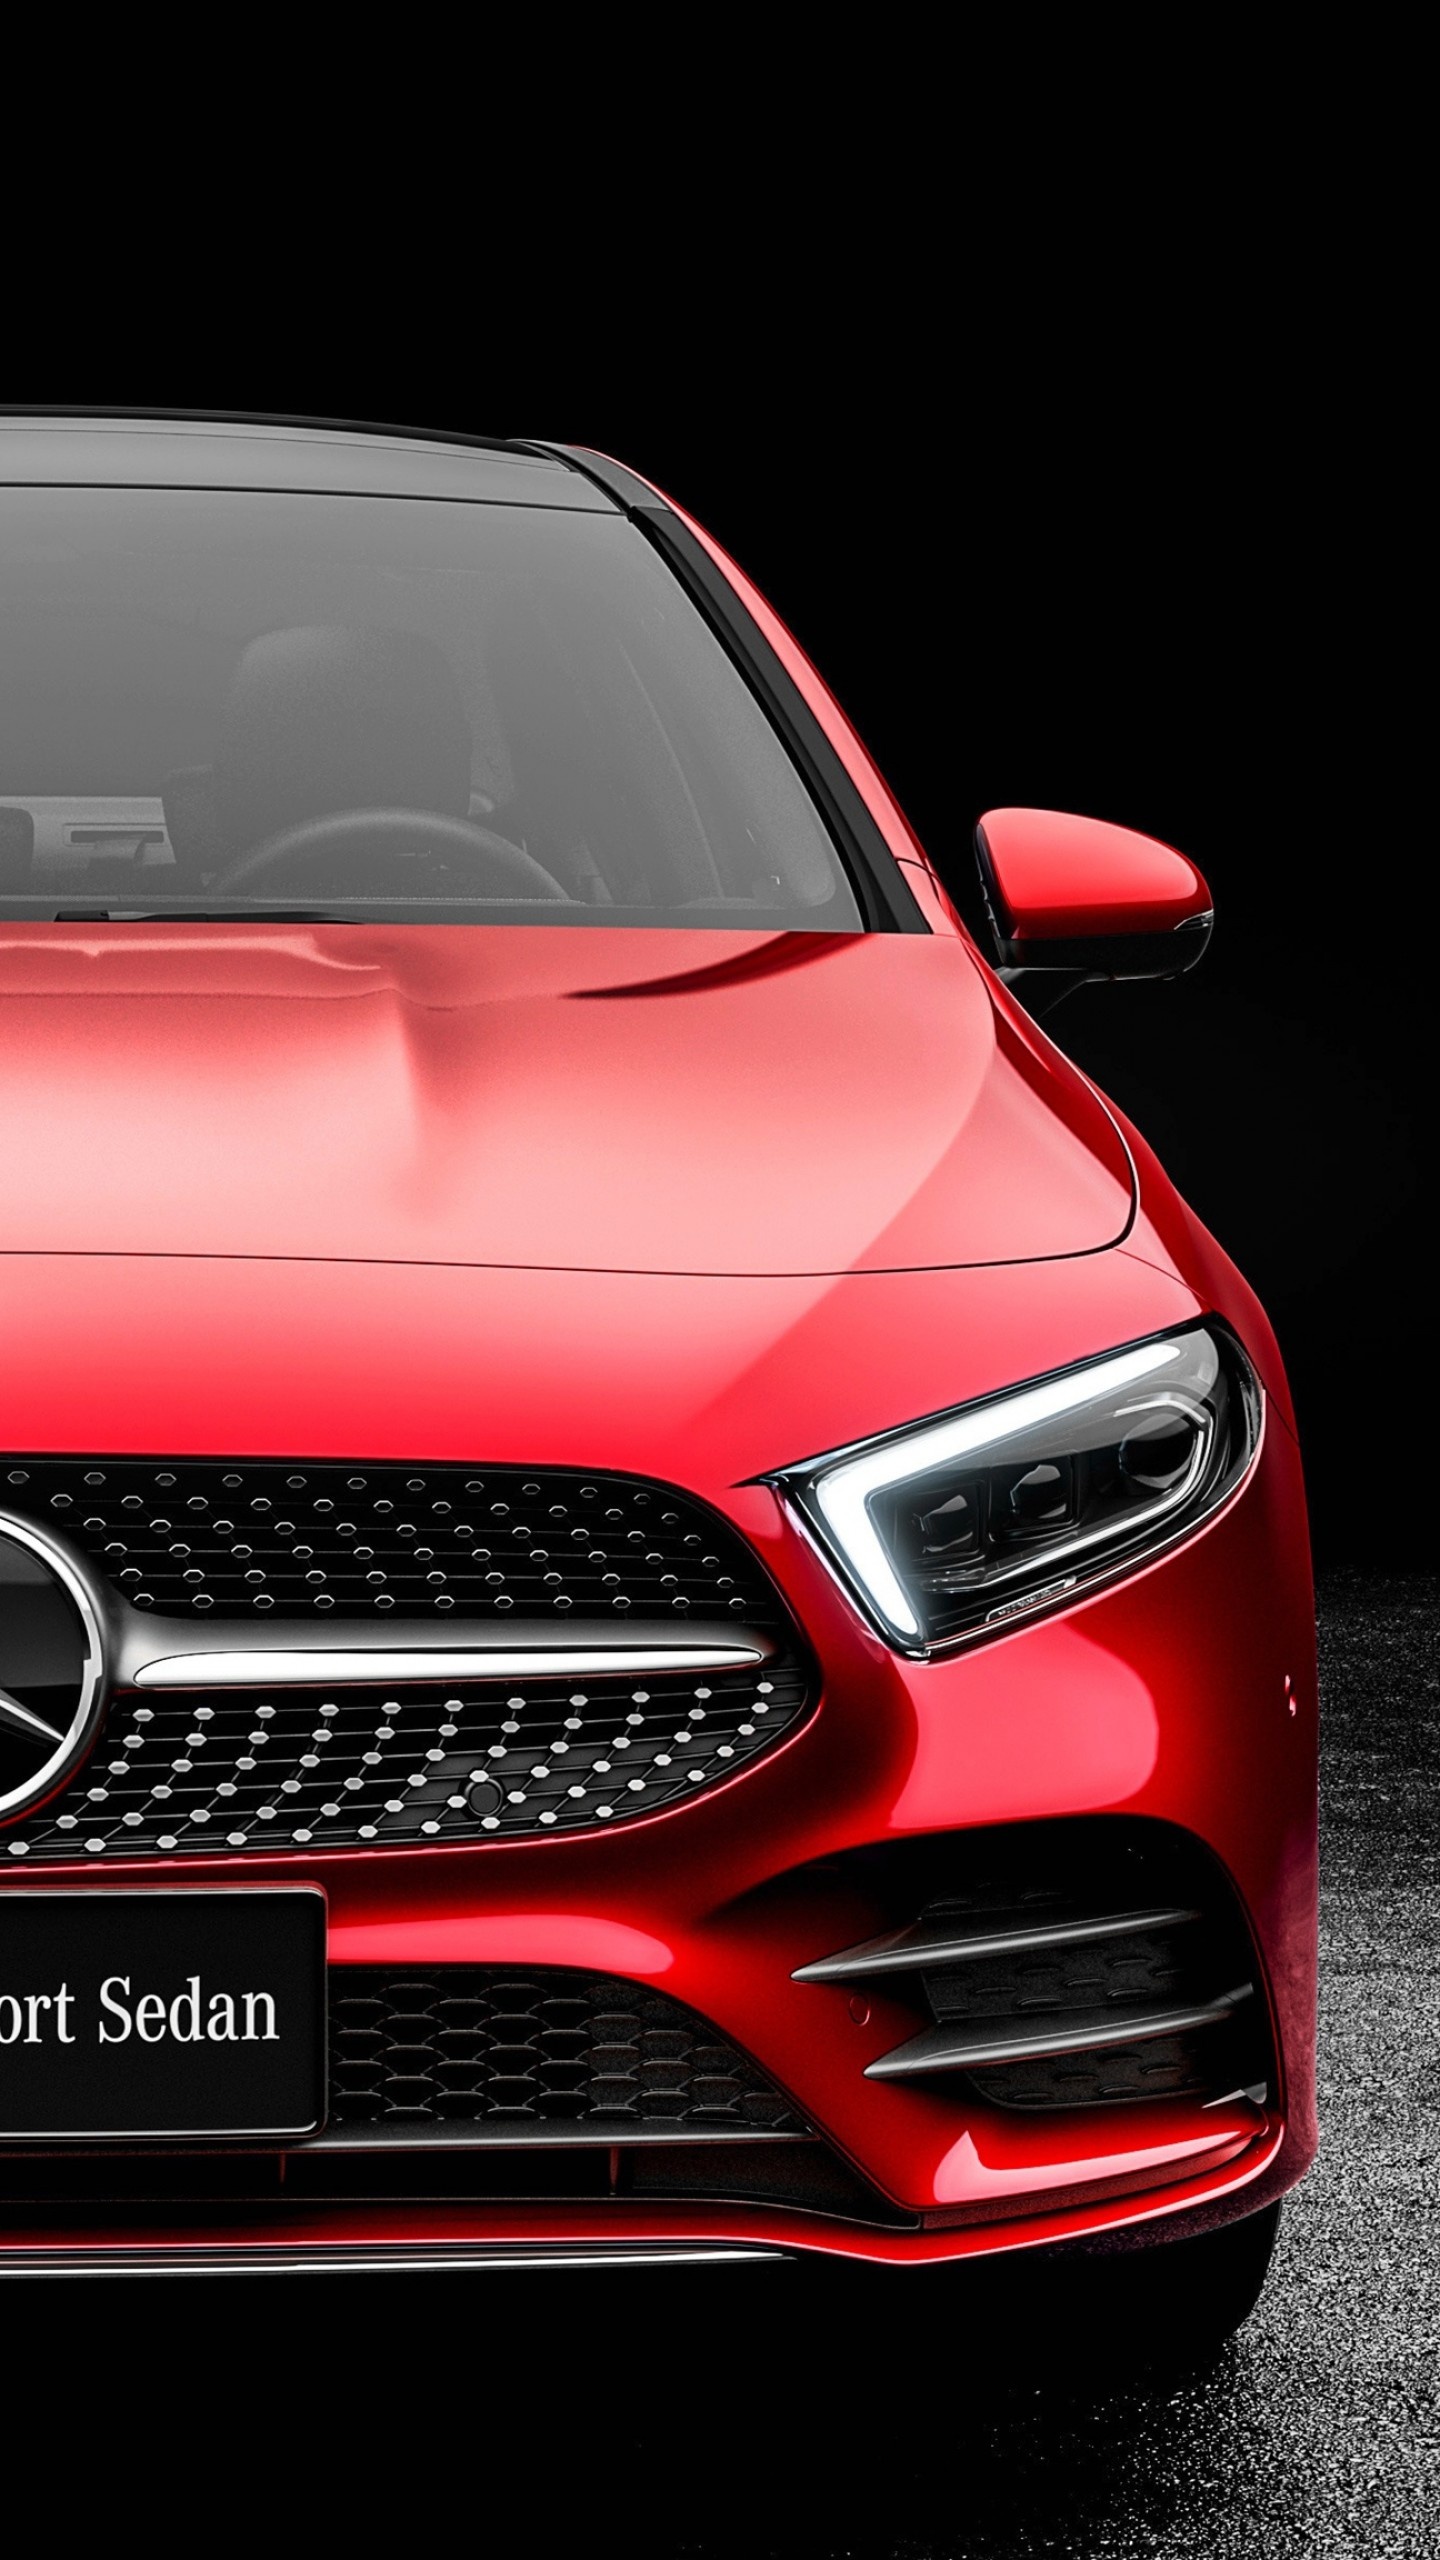 Mercedes-Benz A-Class, L Sedan model, 2019 release, Stunning 4k wallpaper, 1440x2560 HD Phone